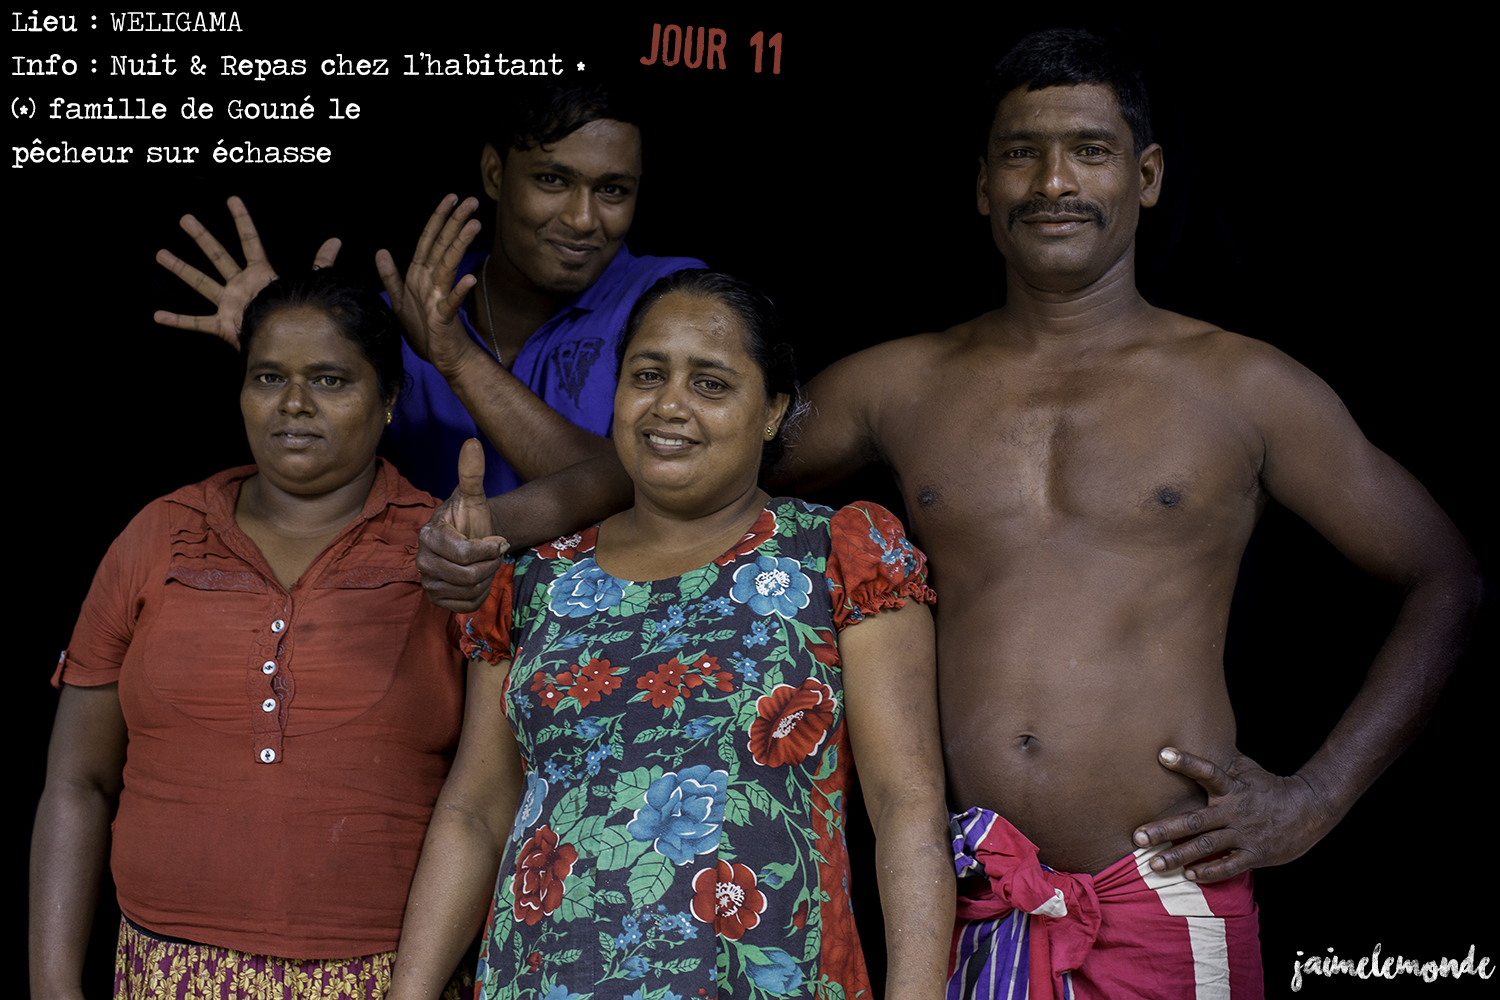 Voyage Sri Lanka - Itinéraire Jour 11 - 1 Weligama - Repas et nuit chez l'habitant - ©jaimelemonde